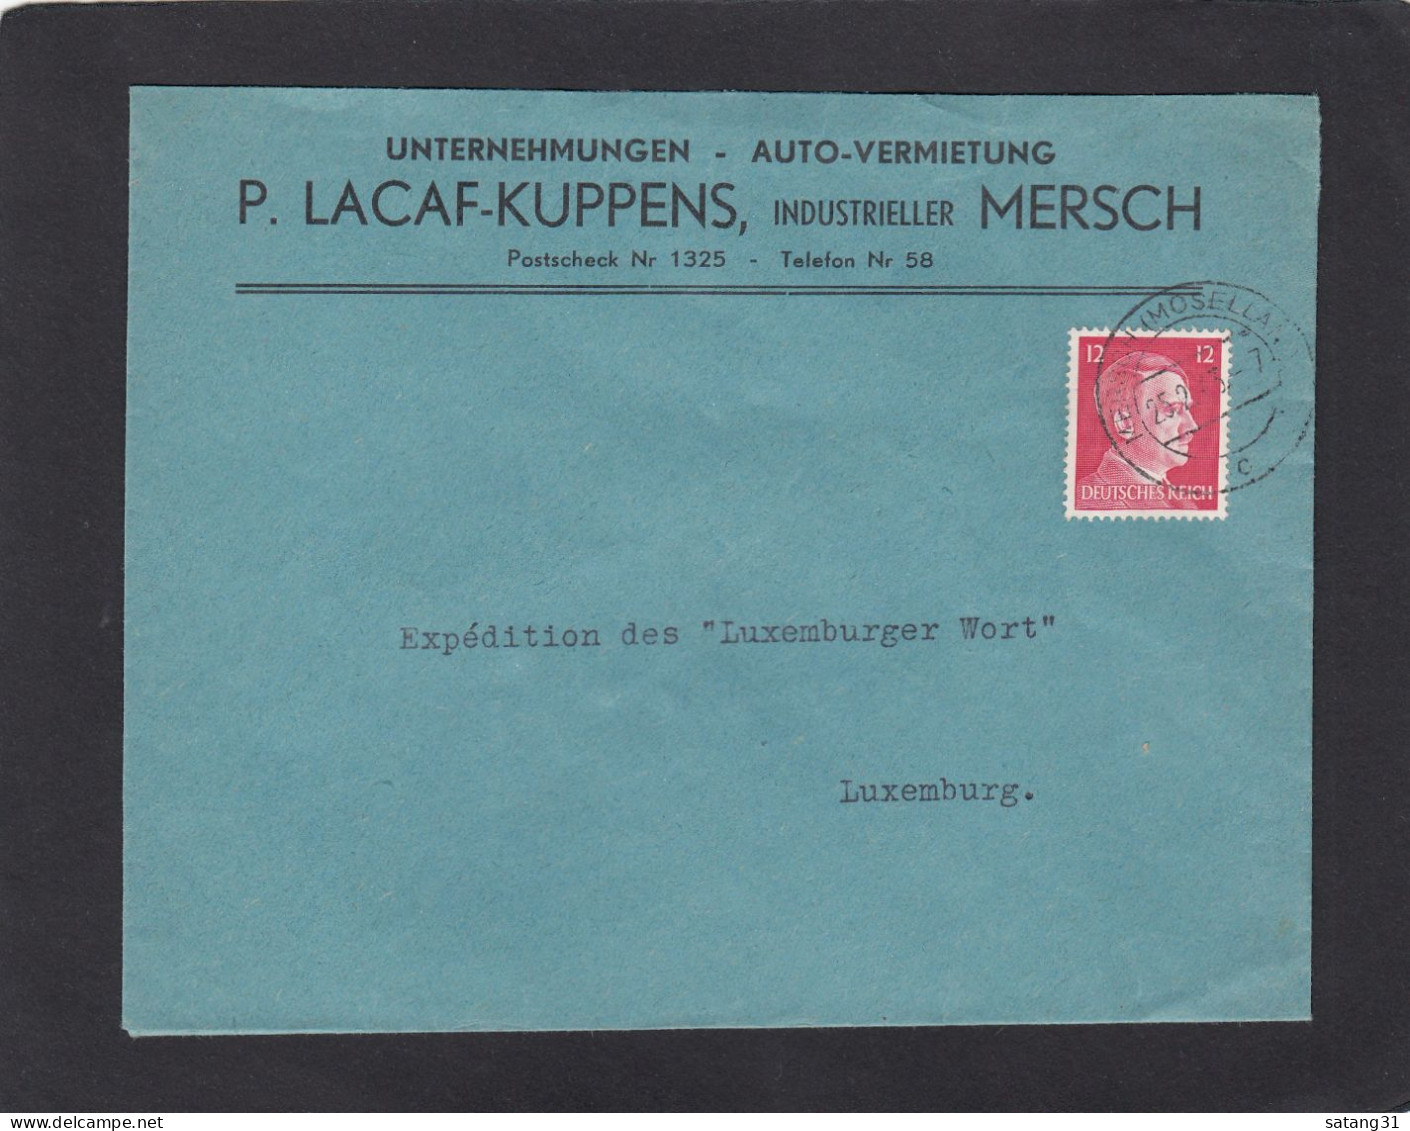 UNTERNEHMUNGEN - AUTO-VERMIETUNG, MERSCH. - 1940-1944 Deutsche Besatzung